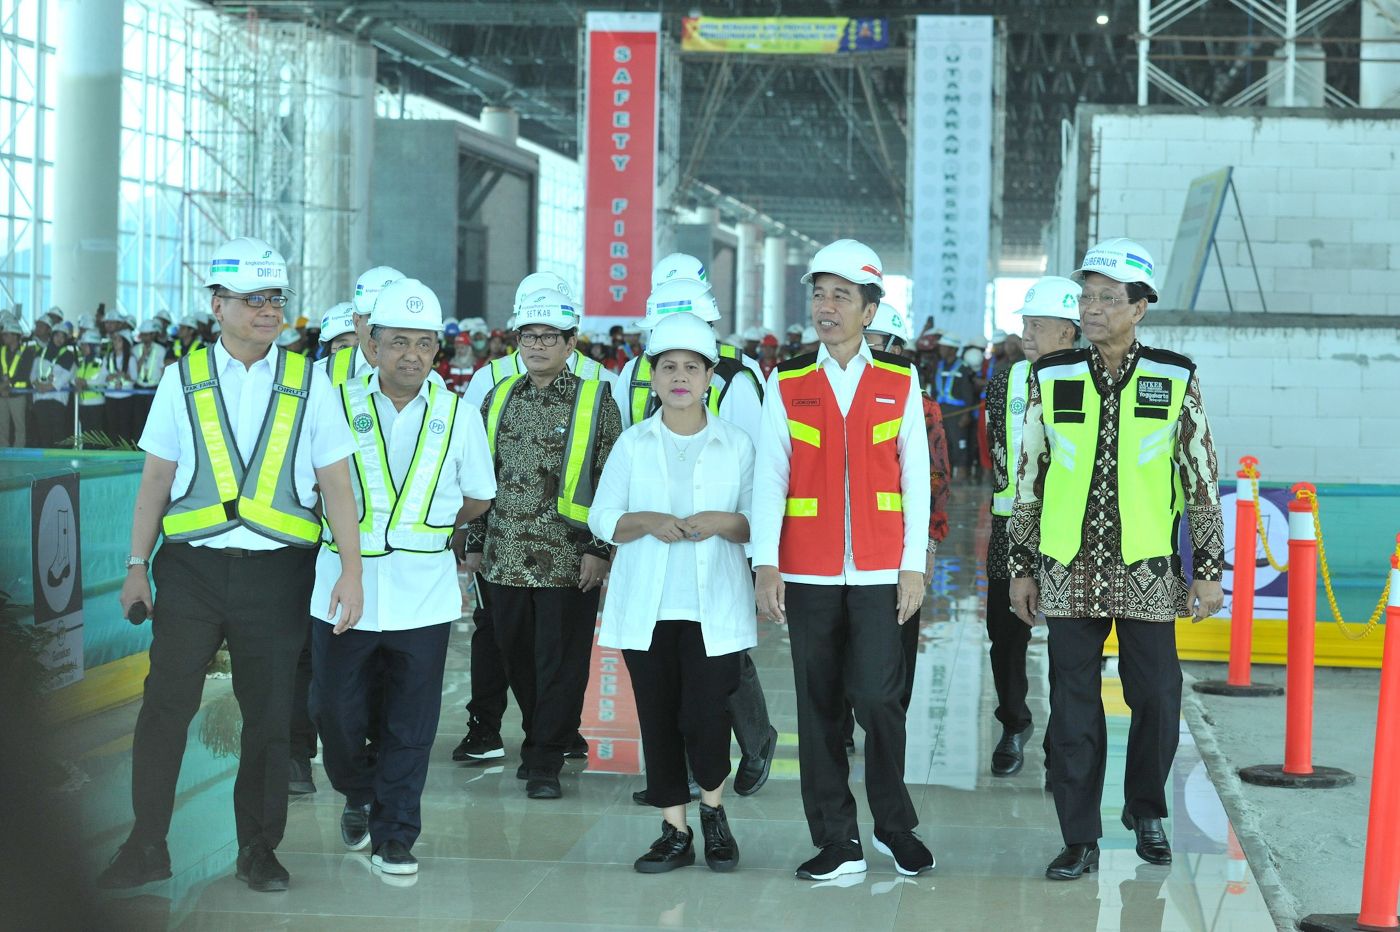 Selesai Desember, Presiden Jokowi: Bandara Internasional Yogyakarta Akan Terkoneksi Tol dan Kereta